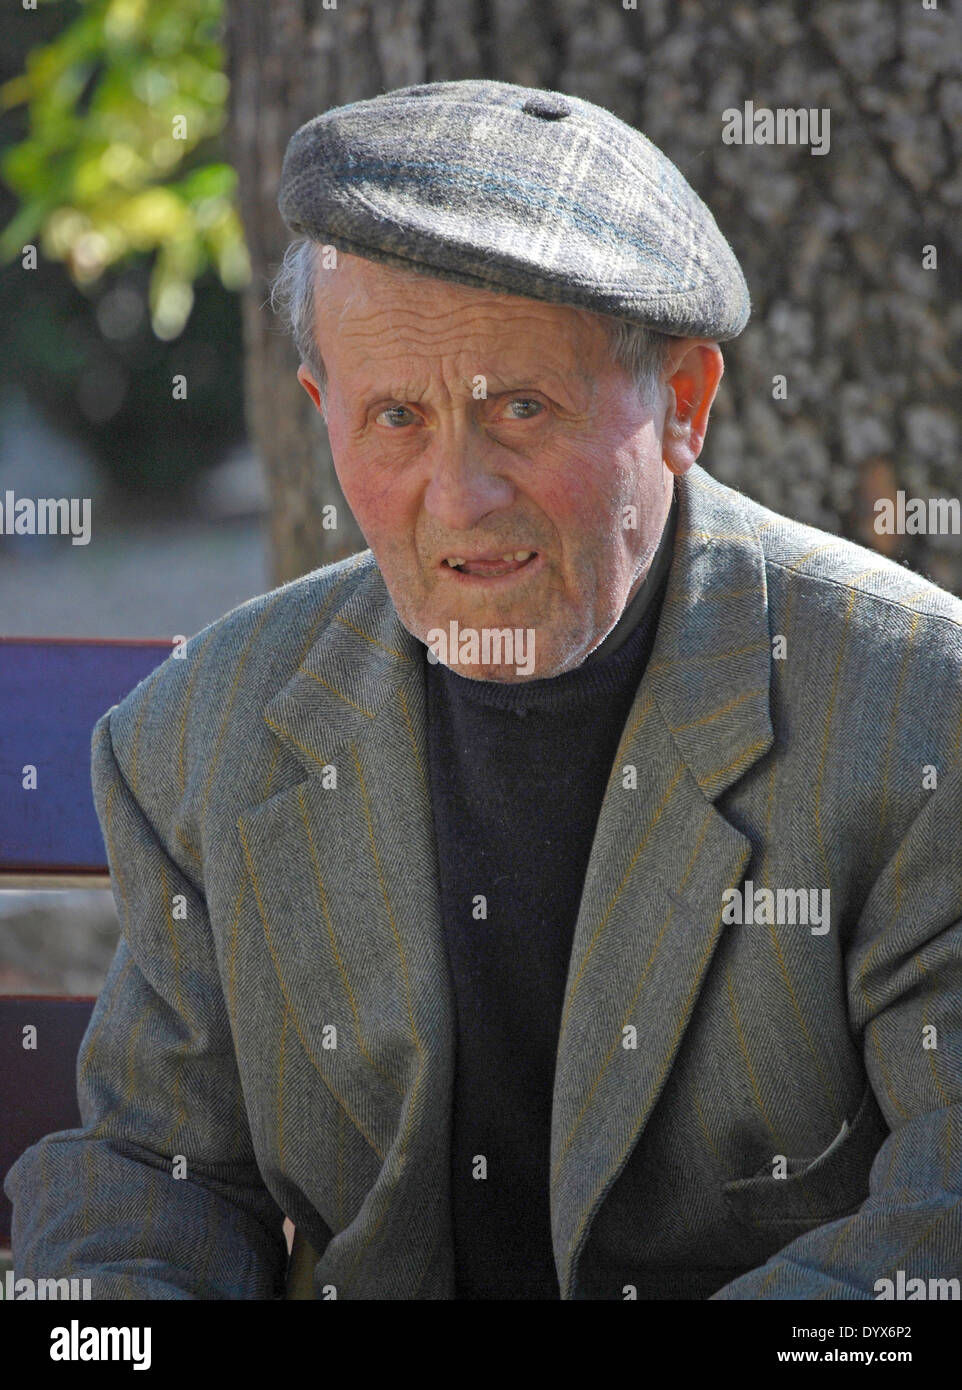 Pienza, Italia. Retrato de un hombre mayor de edad en una gorra sentado en una banca del parque. Foto de stock